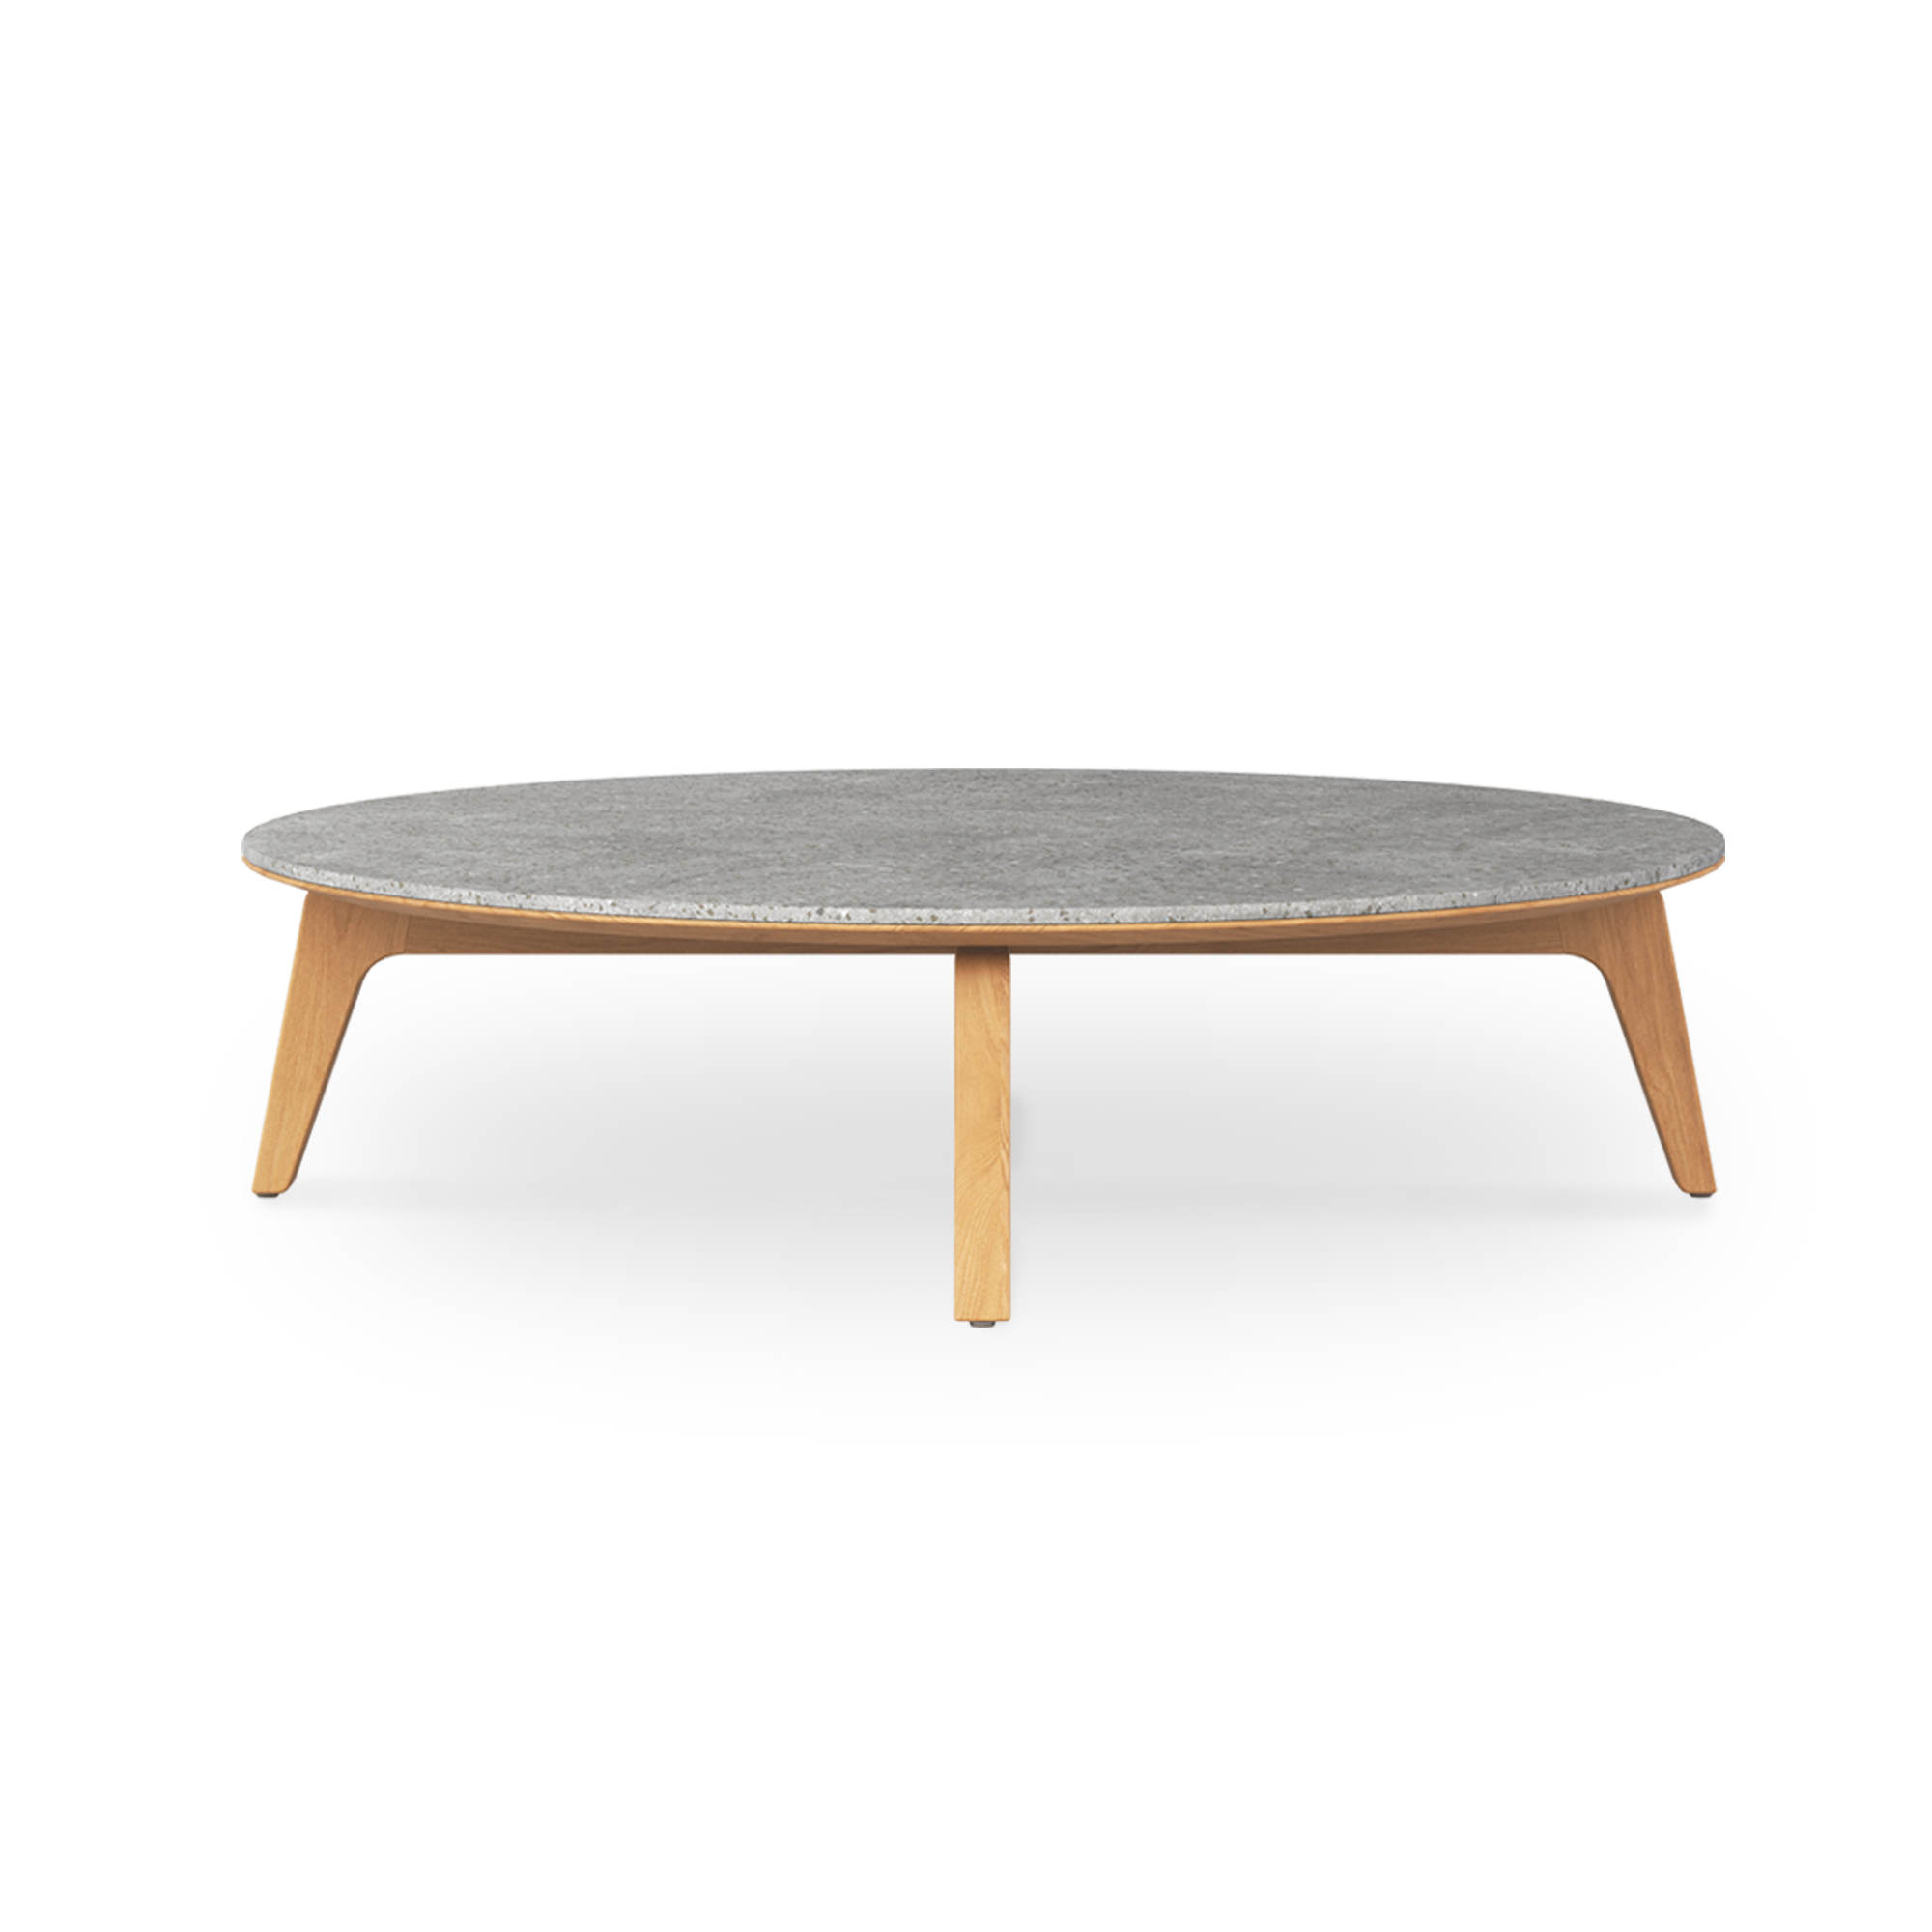 Platon Coffee Table Round Diameter 120 Ceramic Side